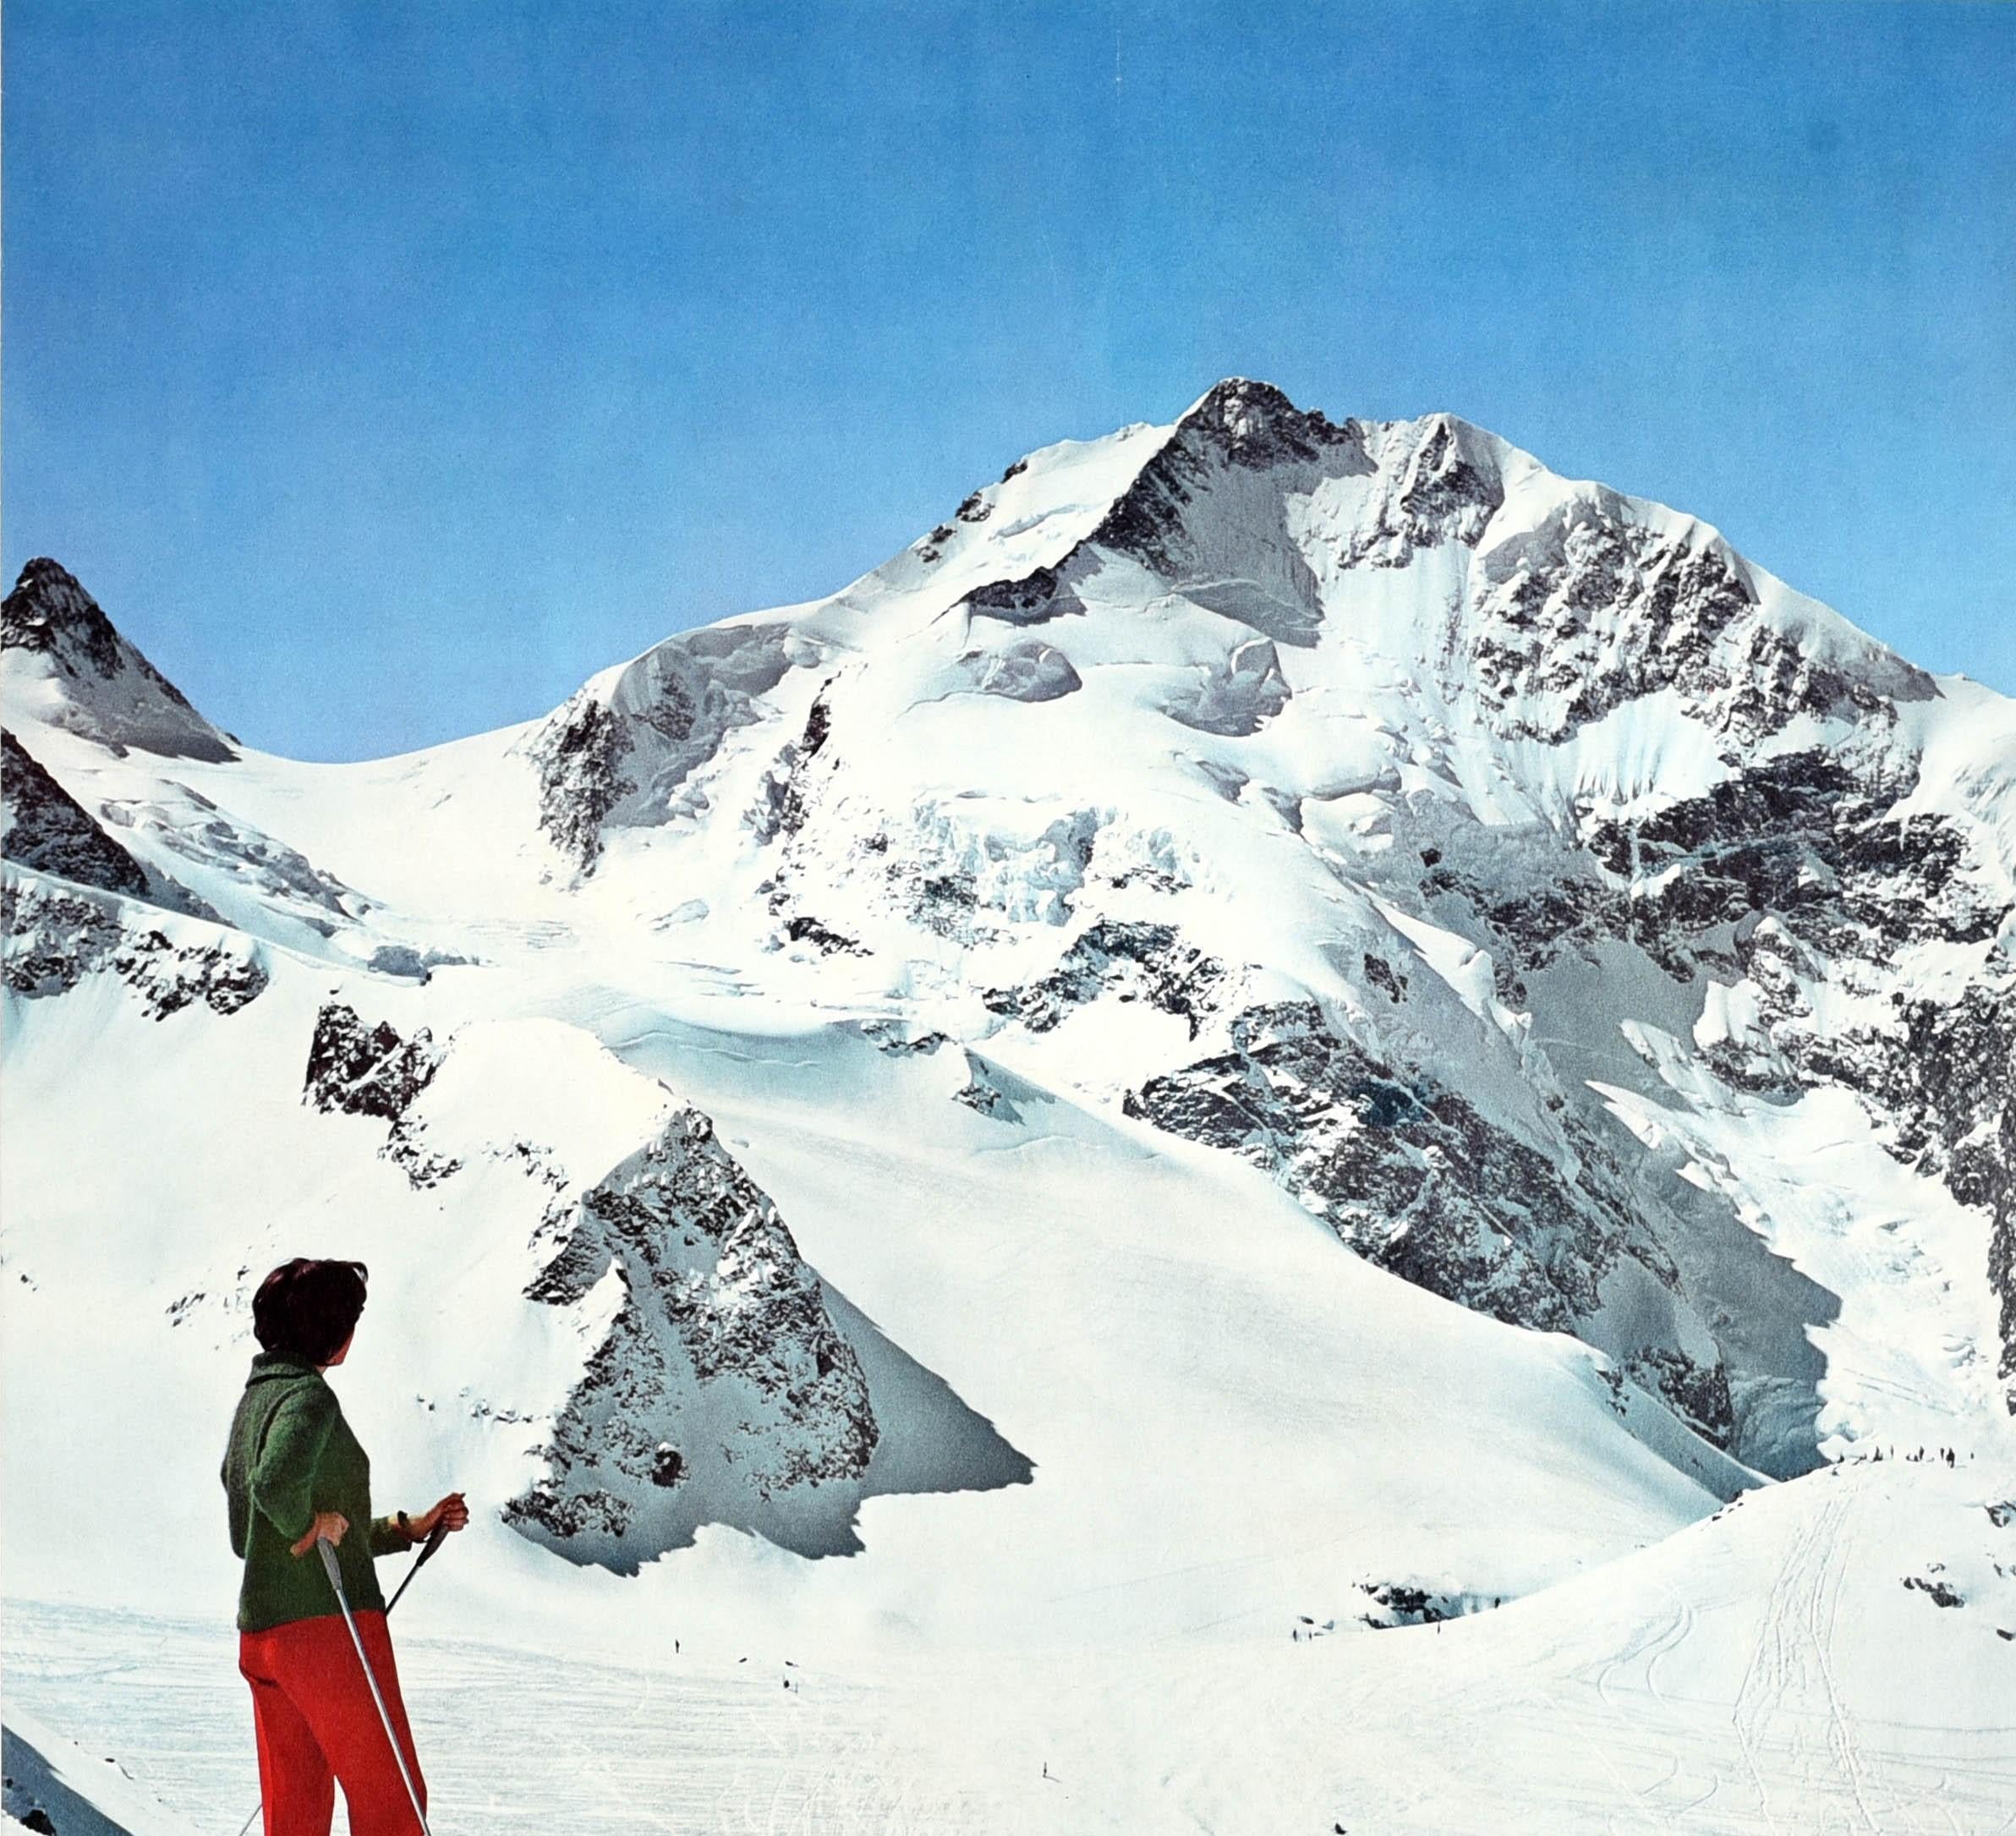 Affiche originale de sports d'hiver pour la populaire station suisse de Pontresina, représentant une femme à skis sur une montagne admirant la beauté des Alpes de l'Engadine, avec un téléski et des skieurs sur la piste en contrebas, le titre en